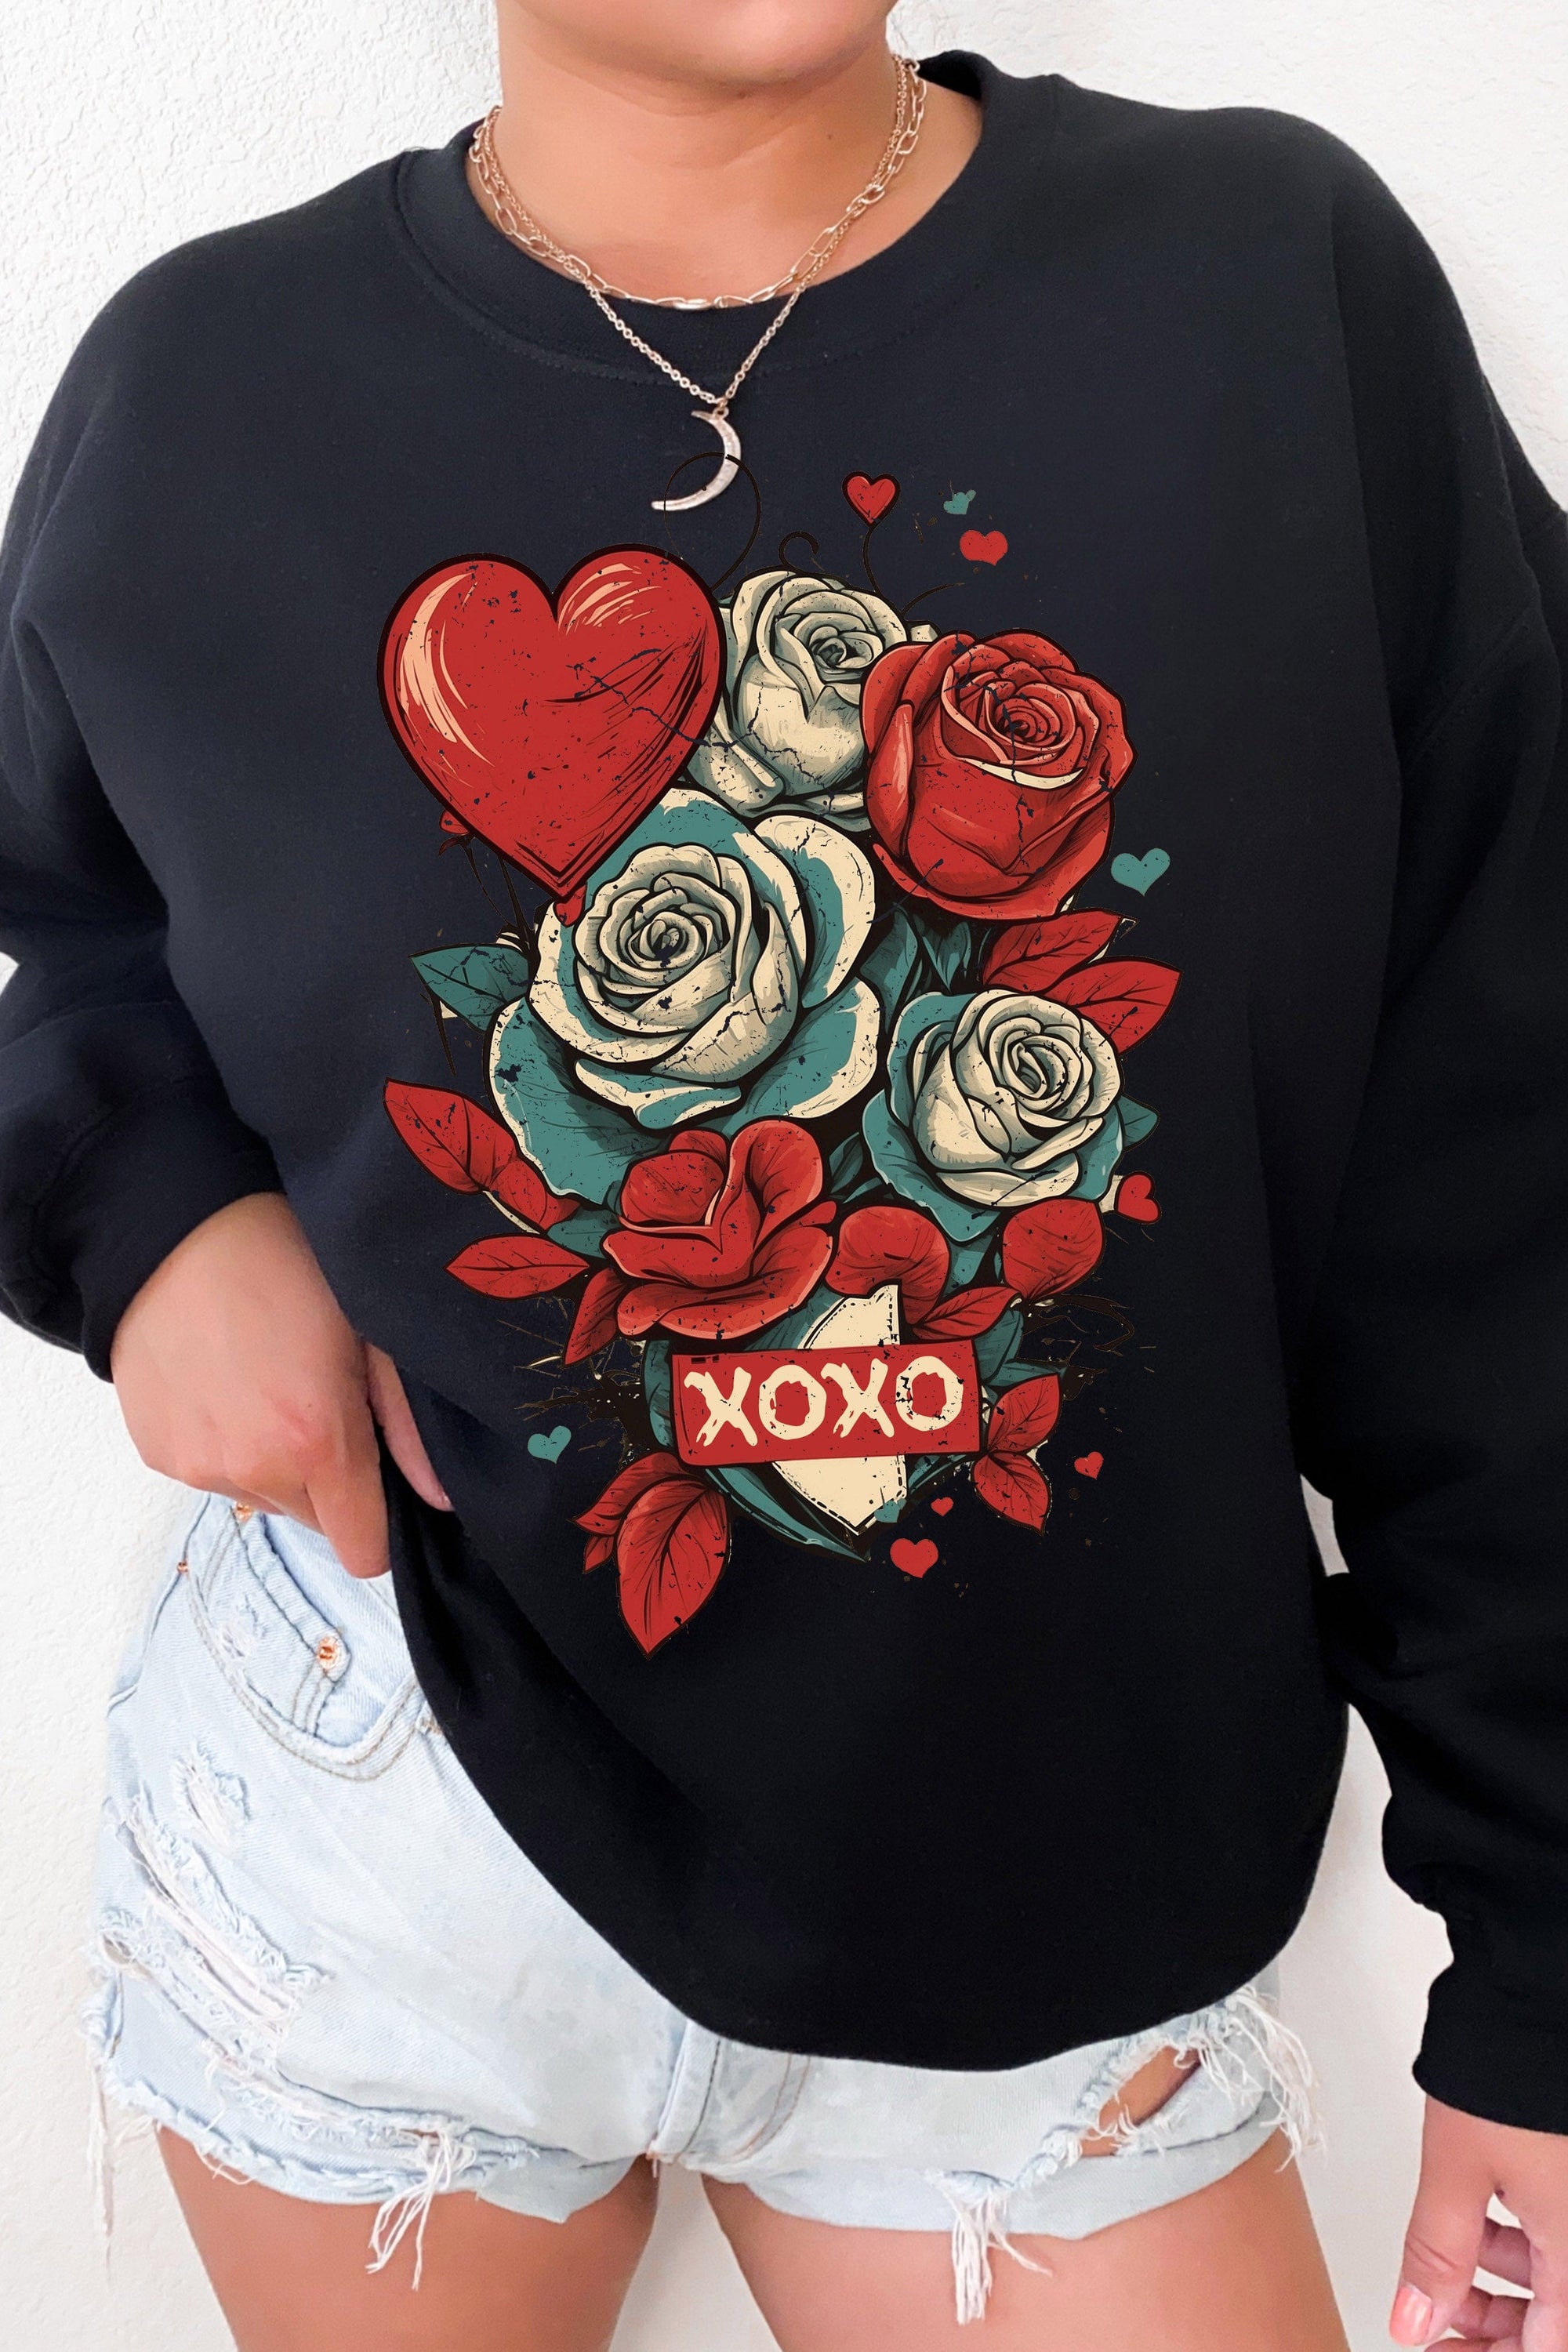 XOXO Roses Fleece Lined Sweatshirt